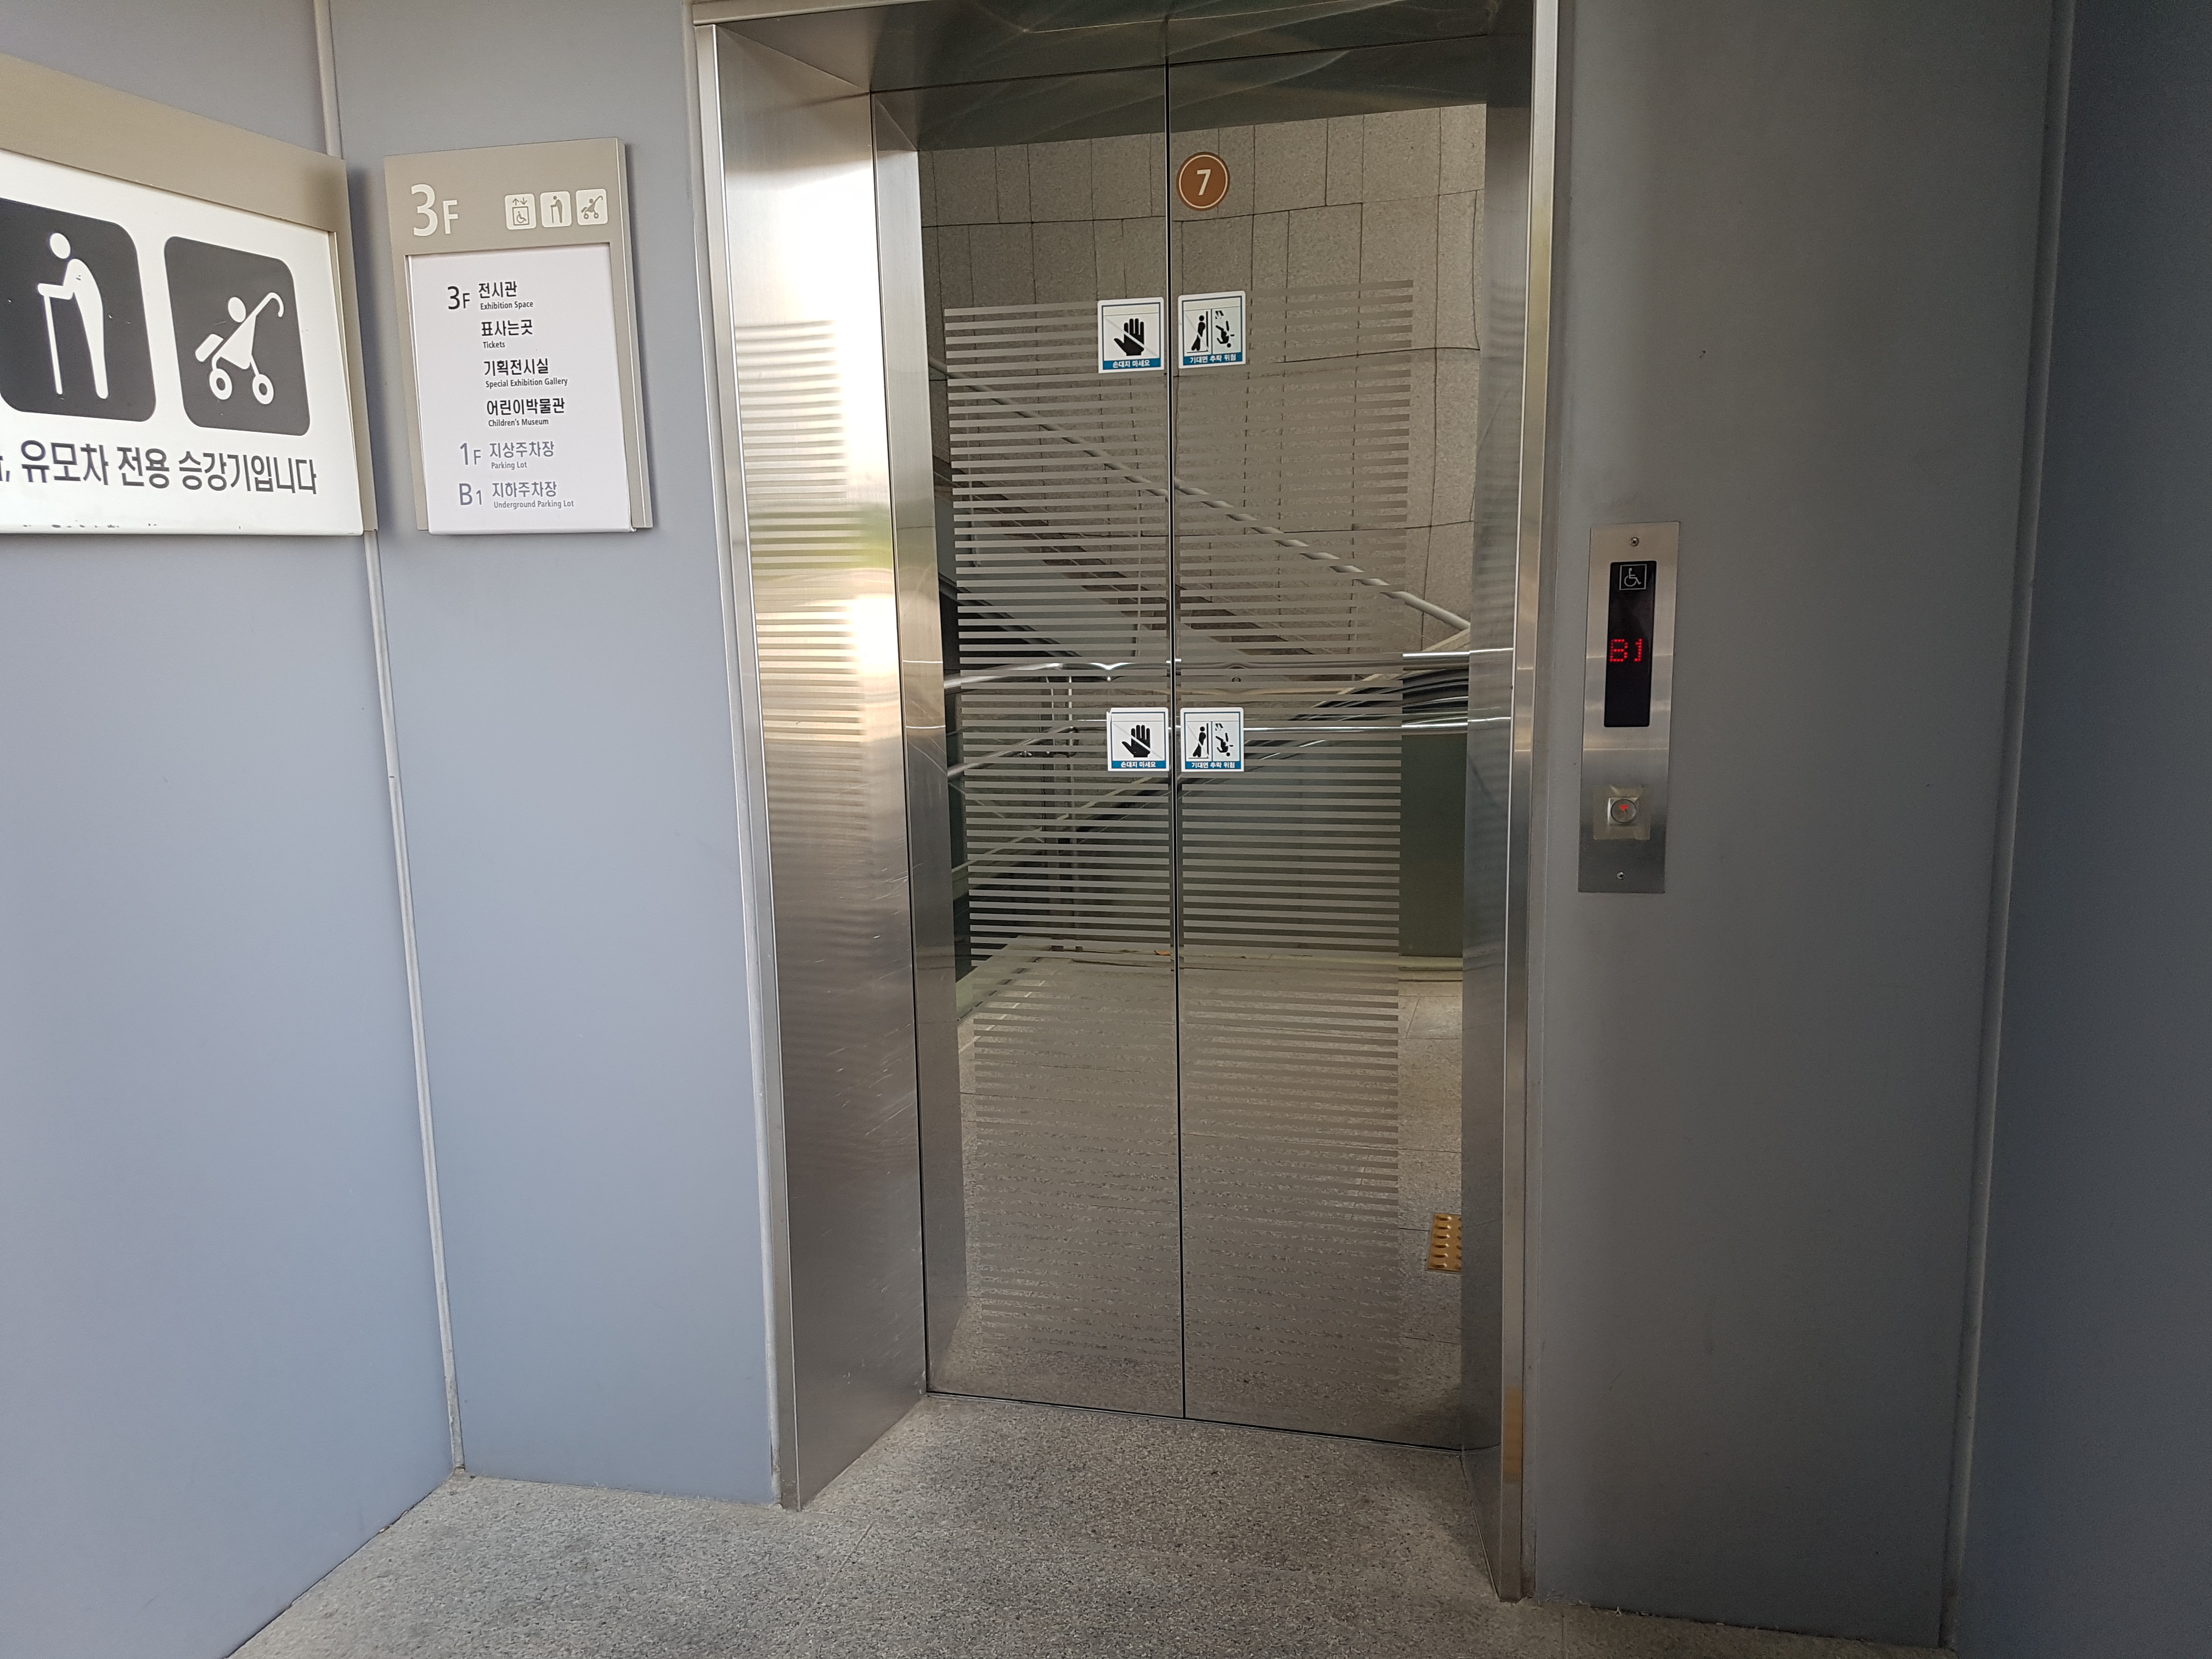 엘리베이터0 : 국립중앙박물관 어린이박물관 엘리베이터 입구